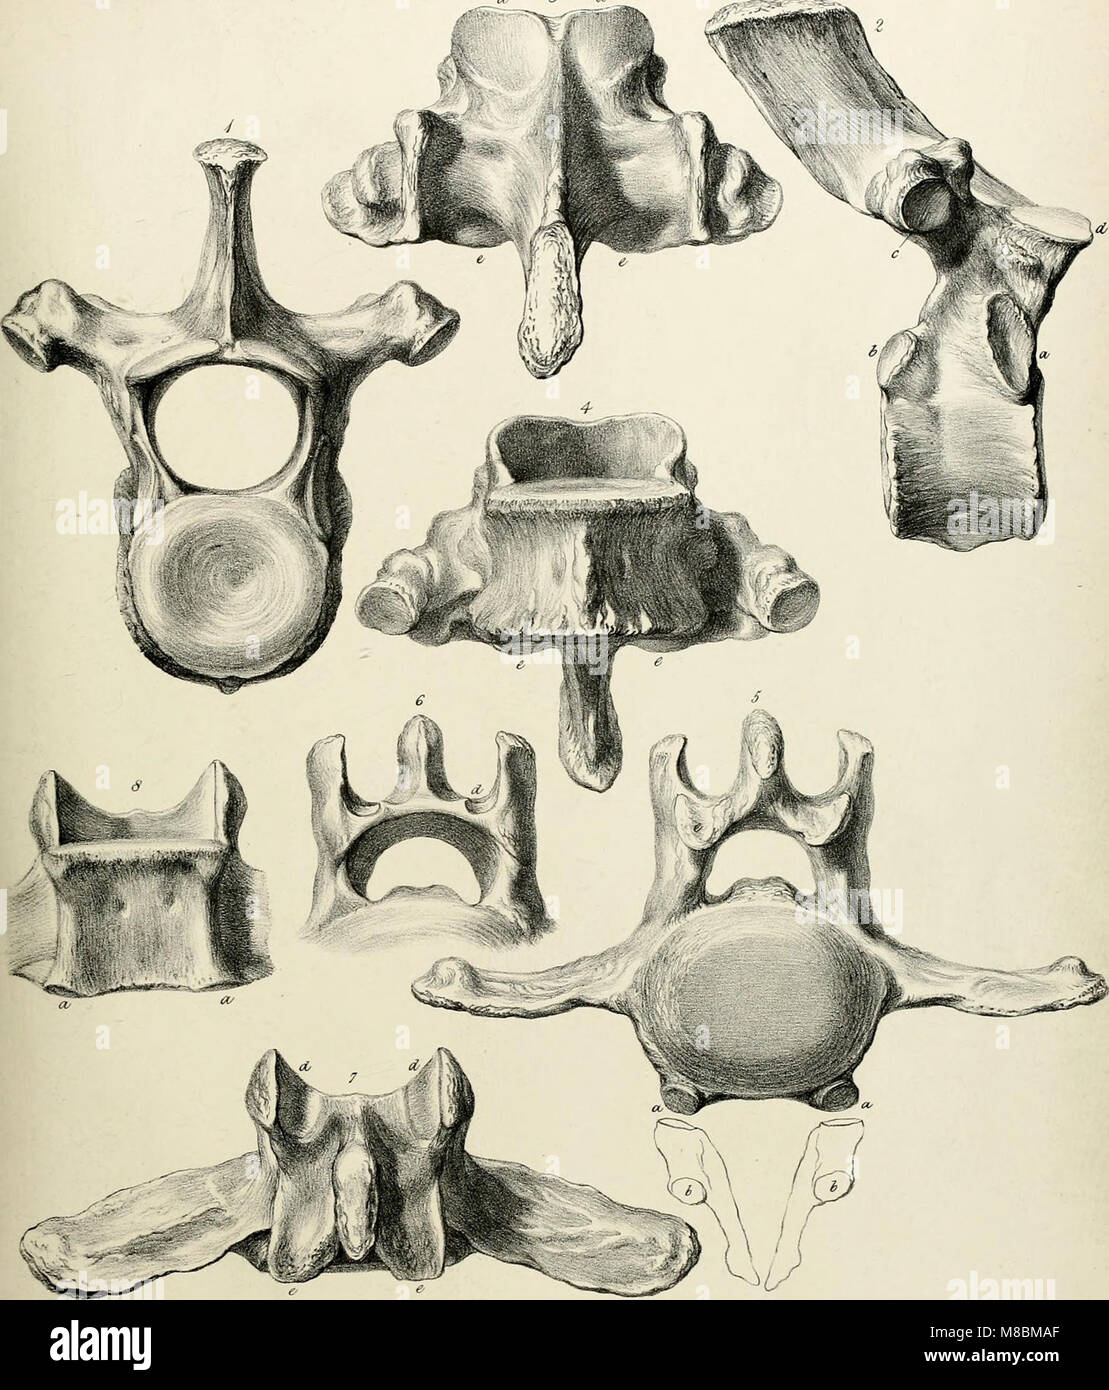 Beschreibung des Skeletts eines ausgestorbenen riesigen Faultier, Mylodon robustus, Owen, mit Beobachtungen auf Megatherioid Vierbeiner im Allgemeinen (1842) (20682156160) Stockfoto